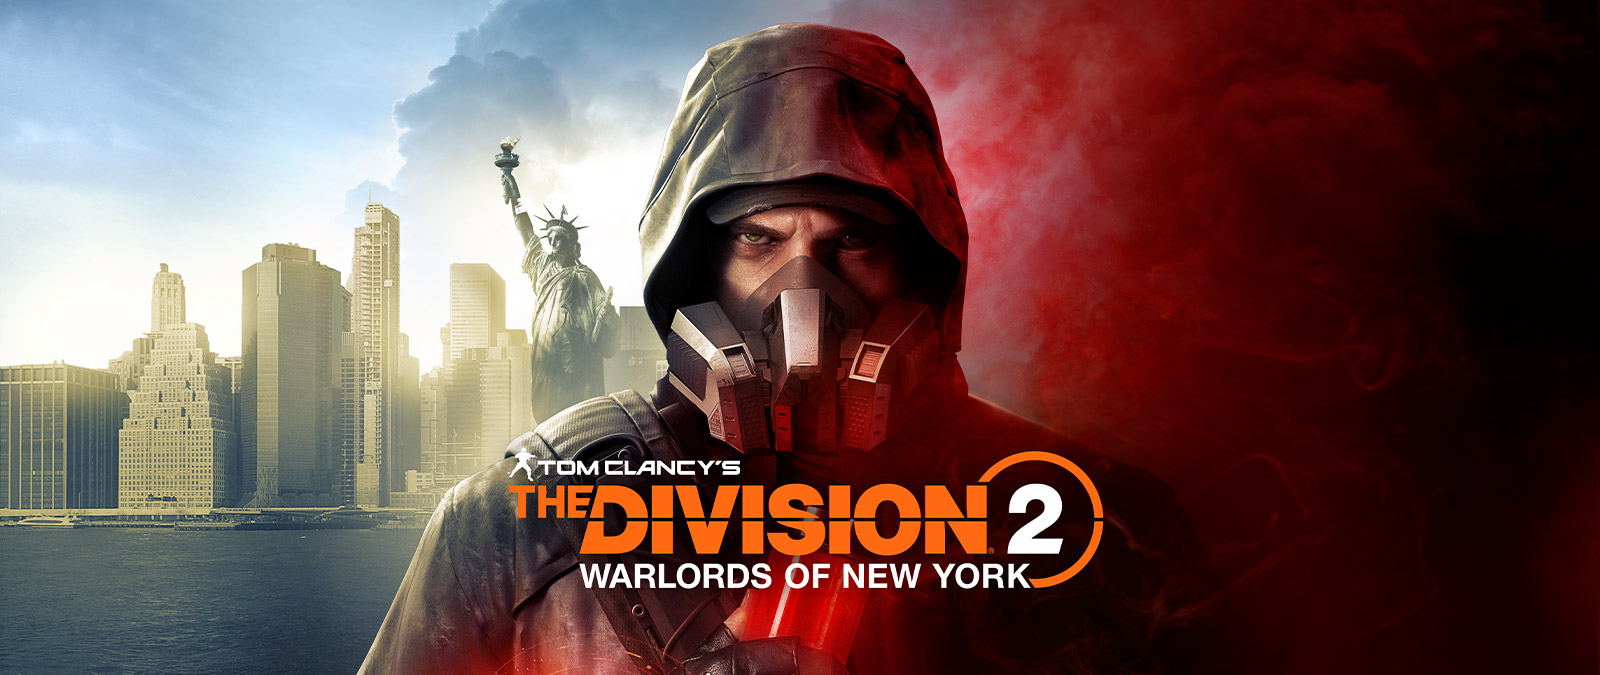 Tom Clancy's The Division 2 Warlords of New York, Aaron Keener con una máscara de gas, parado delante de la Estatua de la Libertad